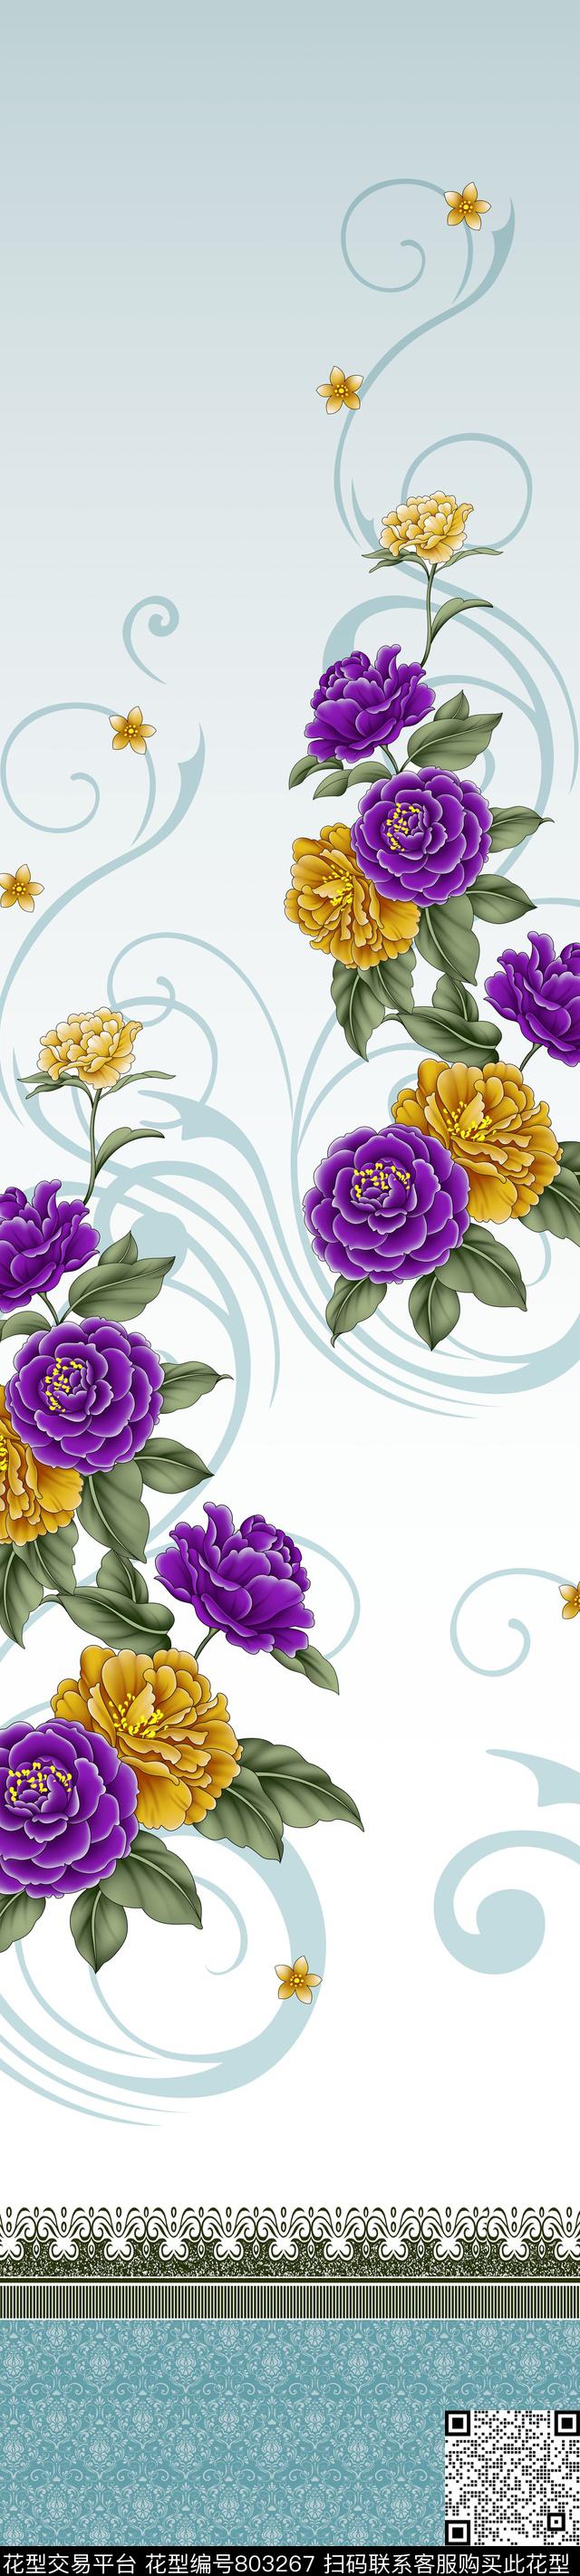 CH170313e.jpg - 803267 - 彩条 大花 花卉 - 传统印花花型 － 窗帘花型设计 － 瓦栏